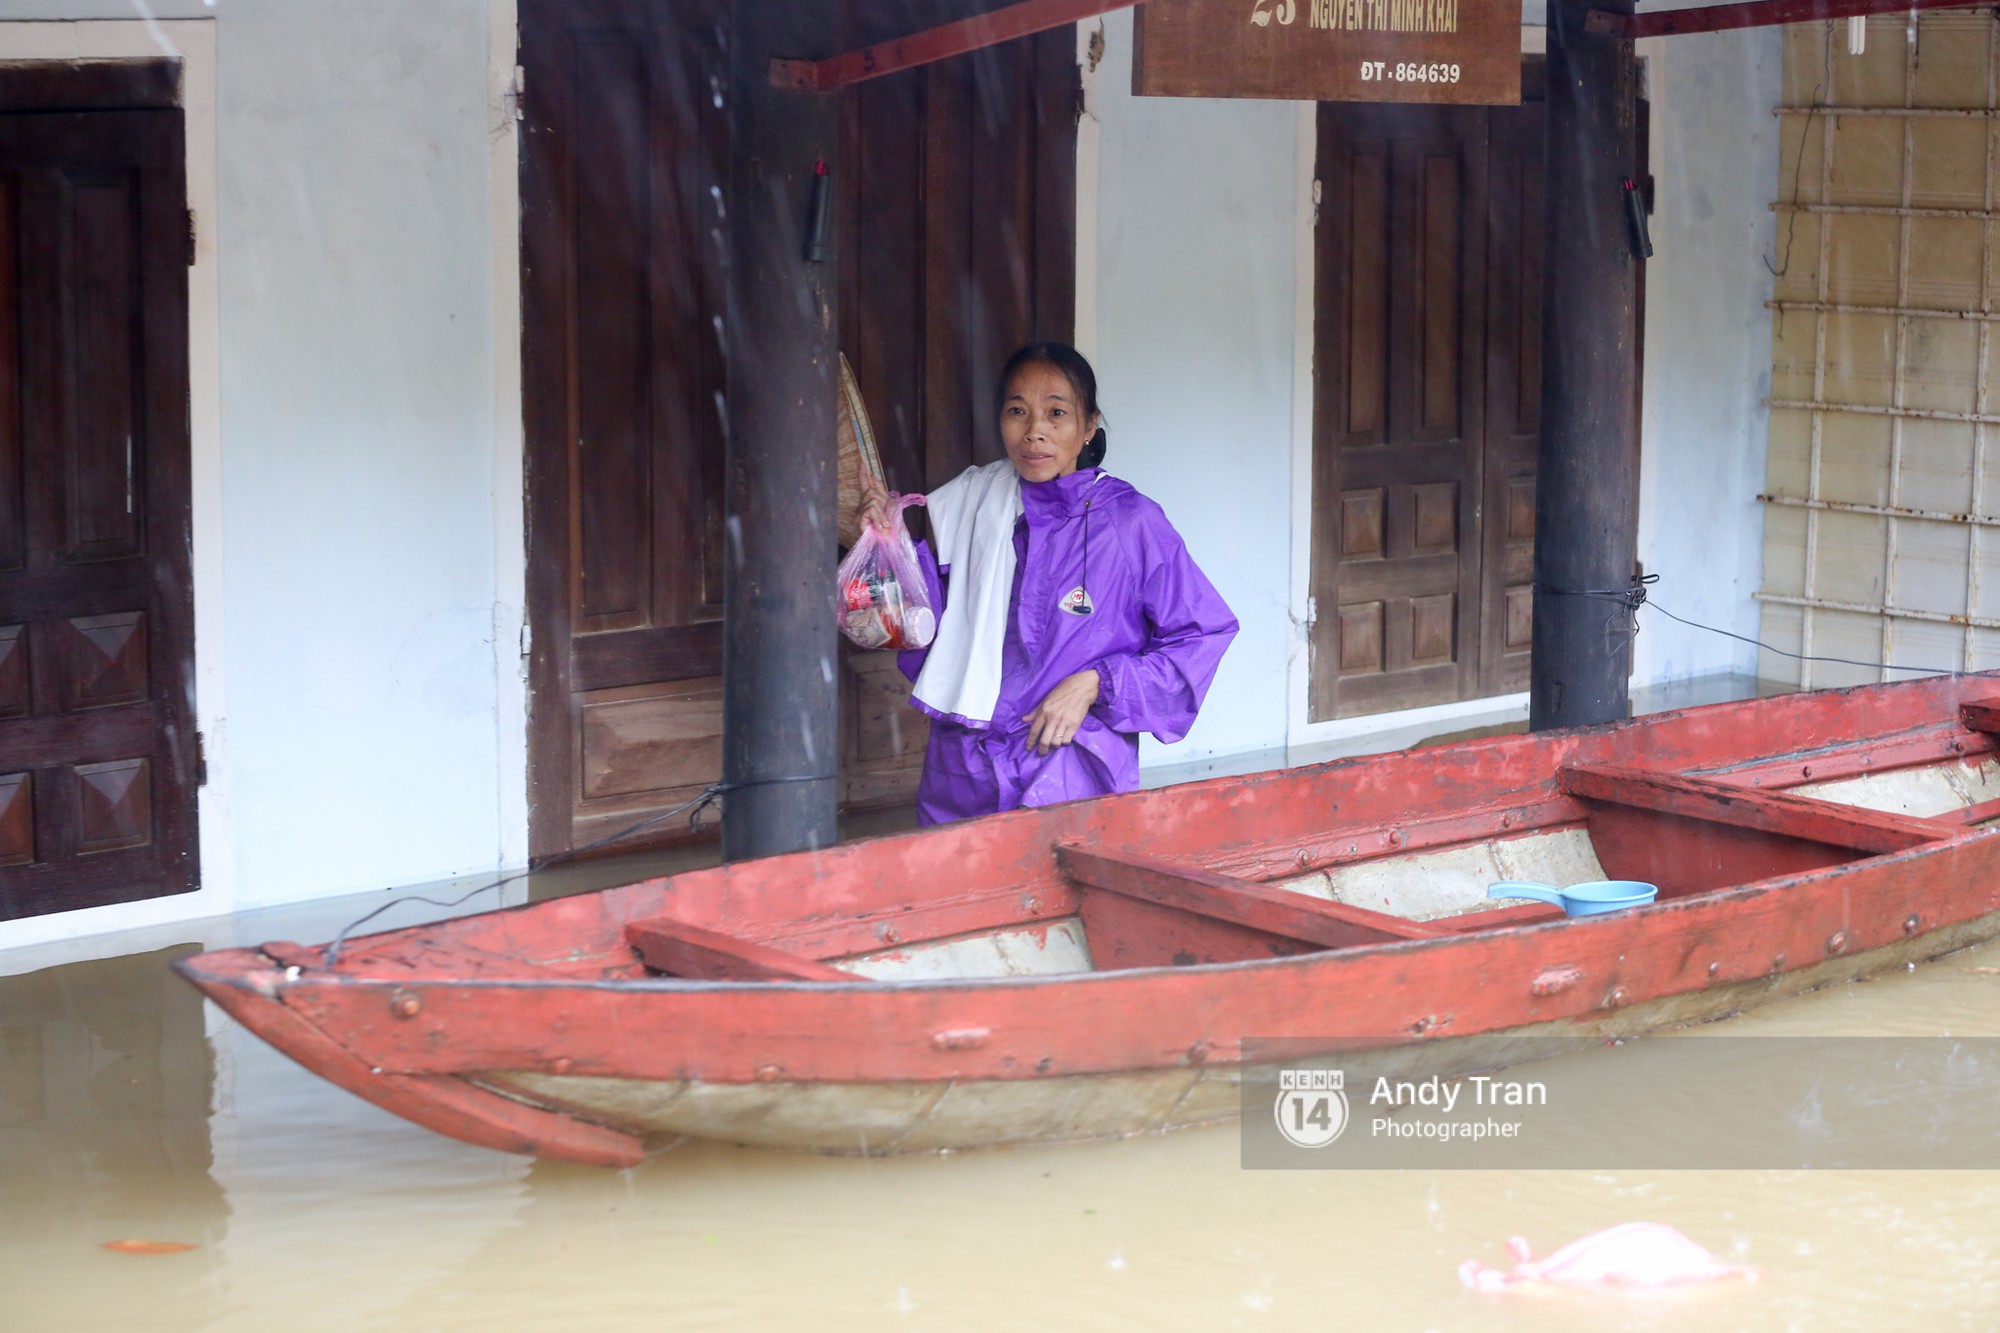 Chùm ảnh: Hội An nước ngập thành sông do ảnh hưởng của bão, người dân và du khách chật vật dùng thuyền bè di chuyển - Ảnh 18.